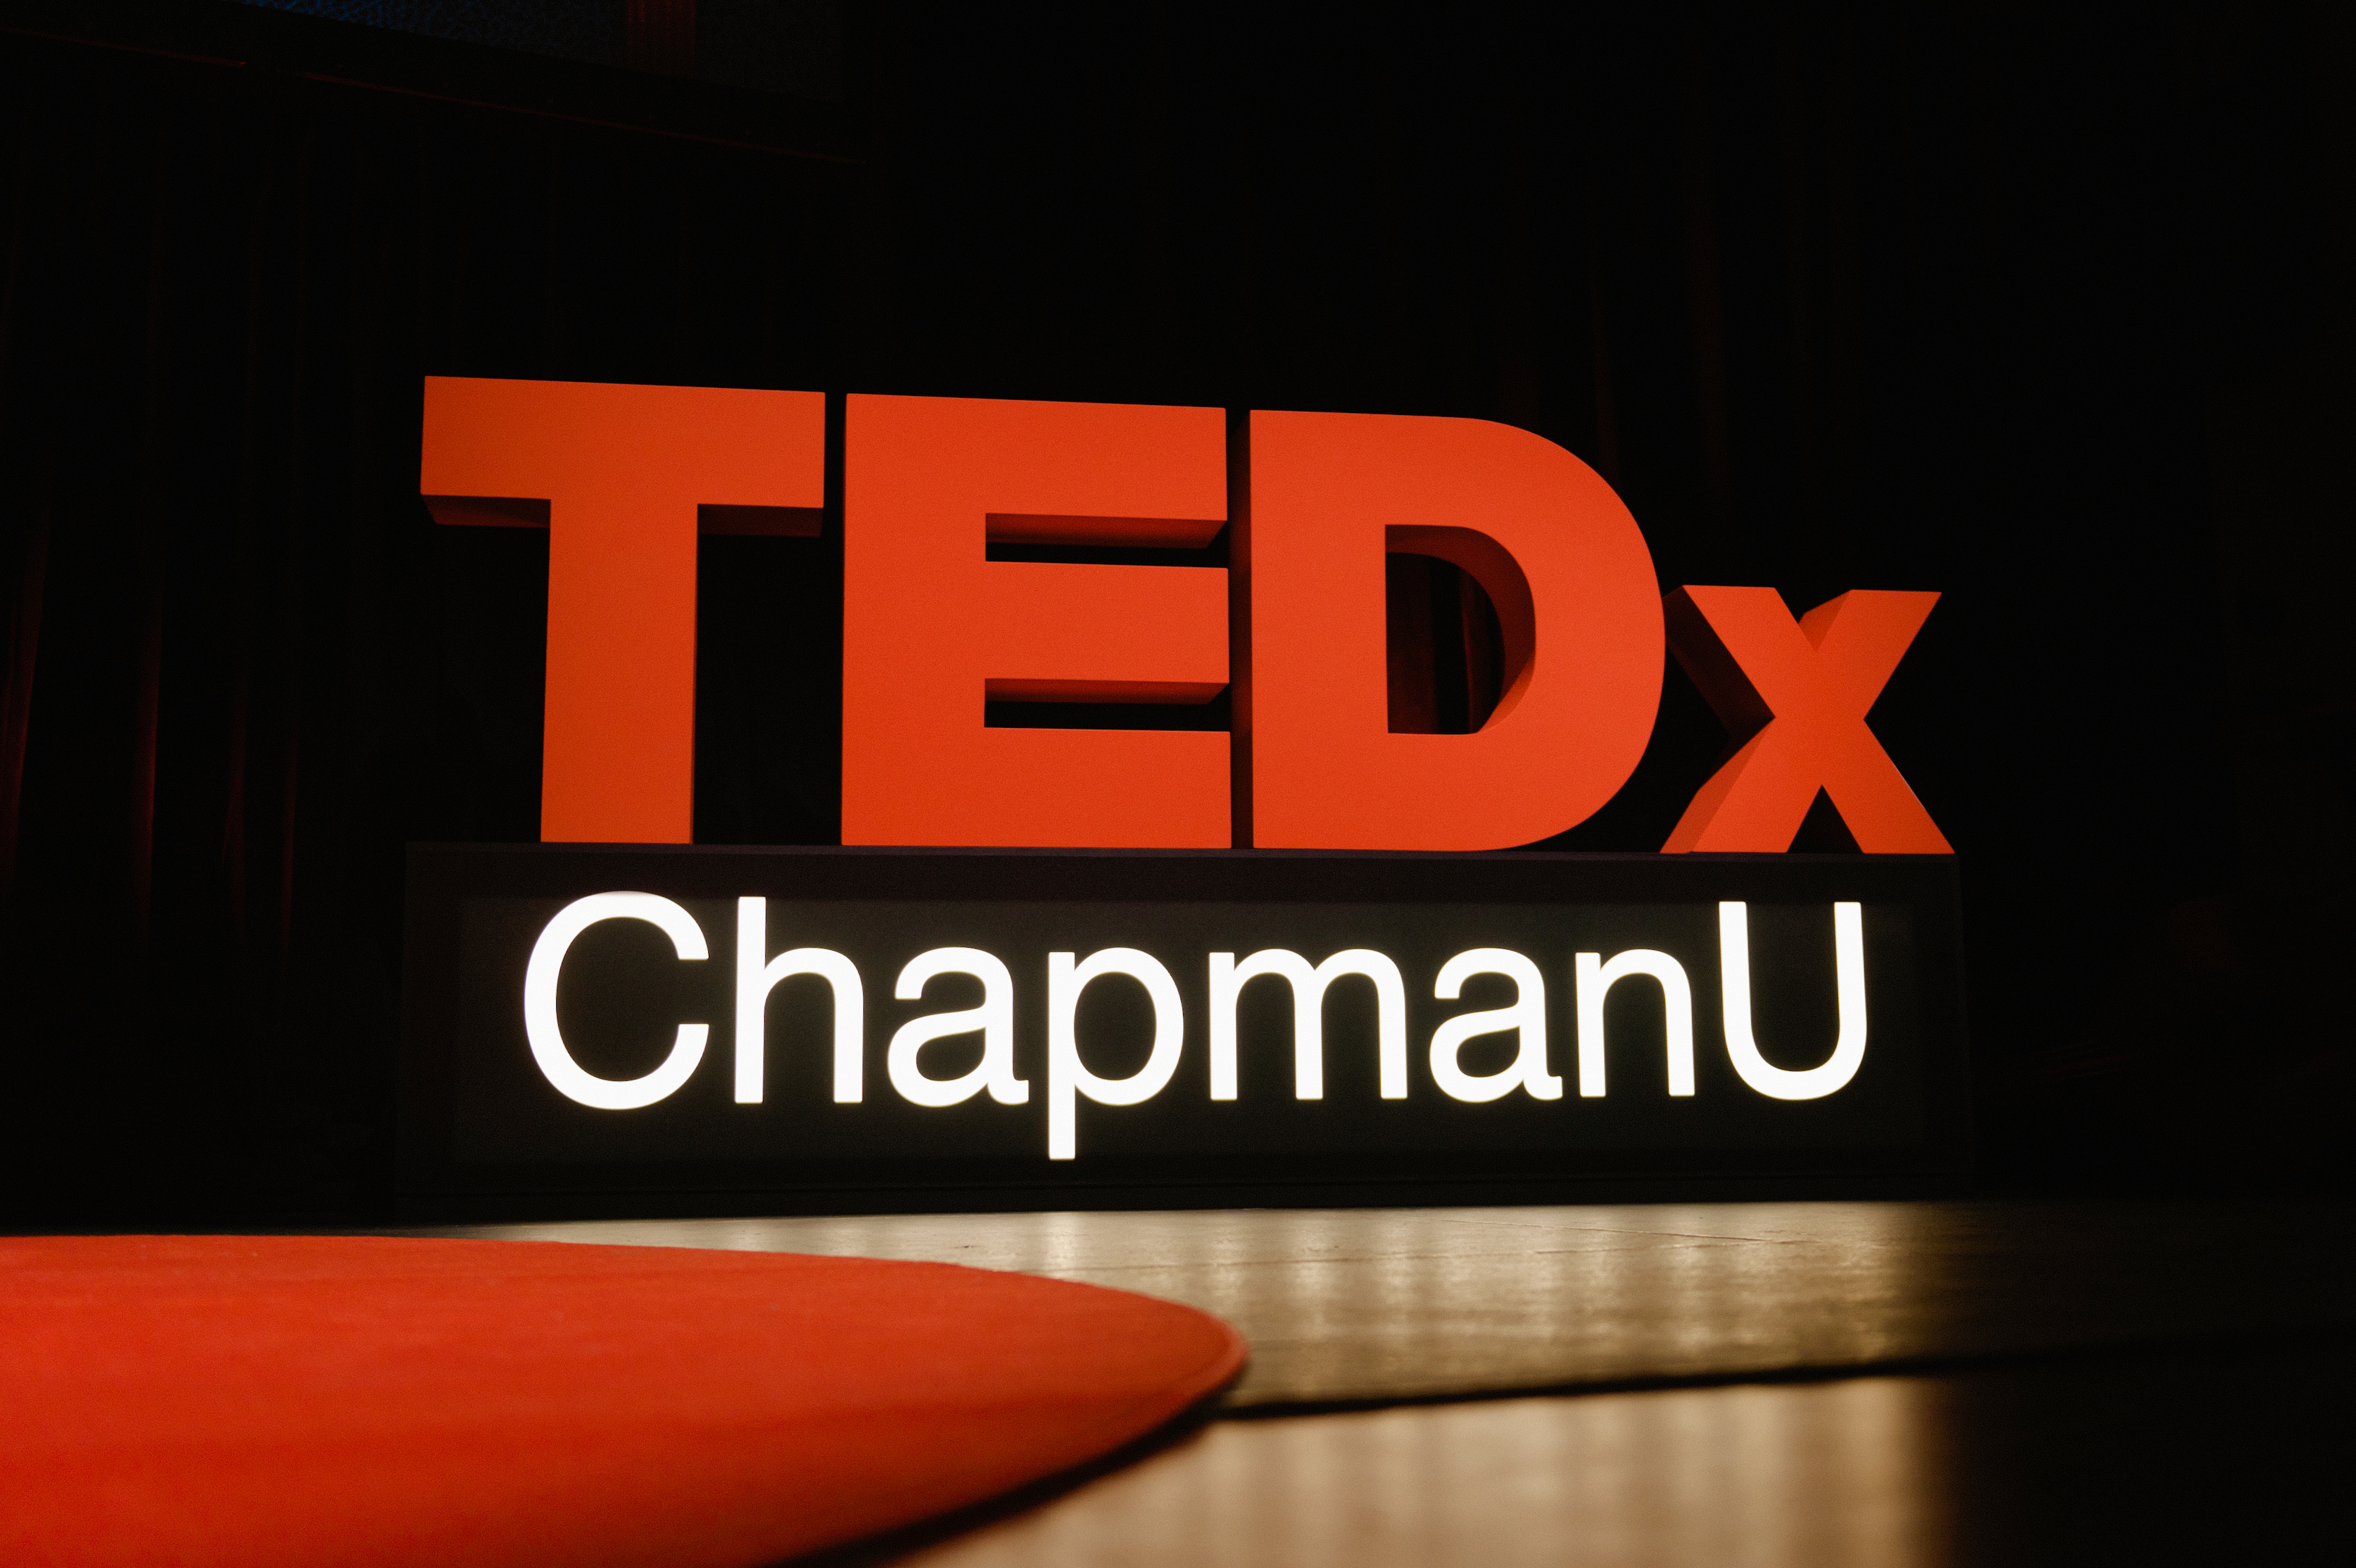 TEDxChapmanU sign